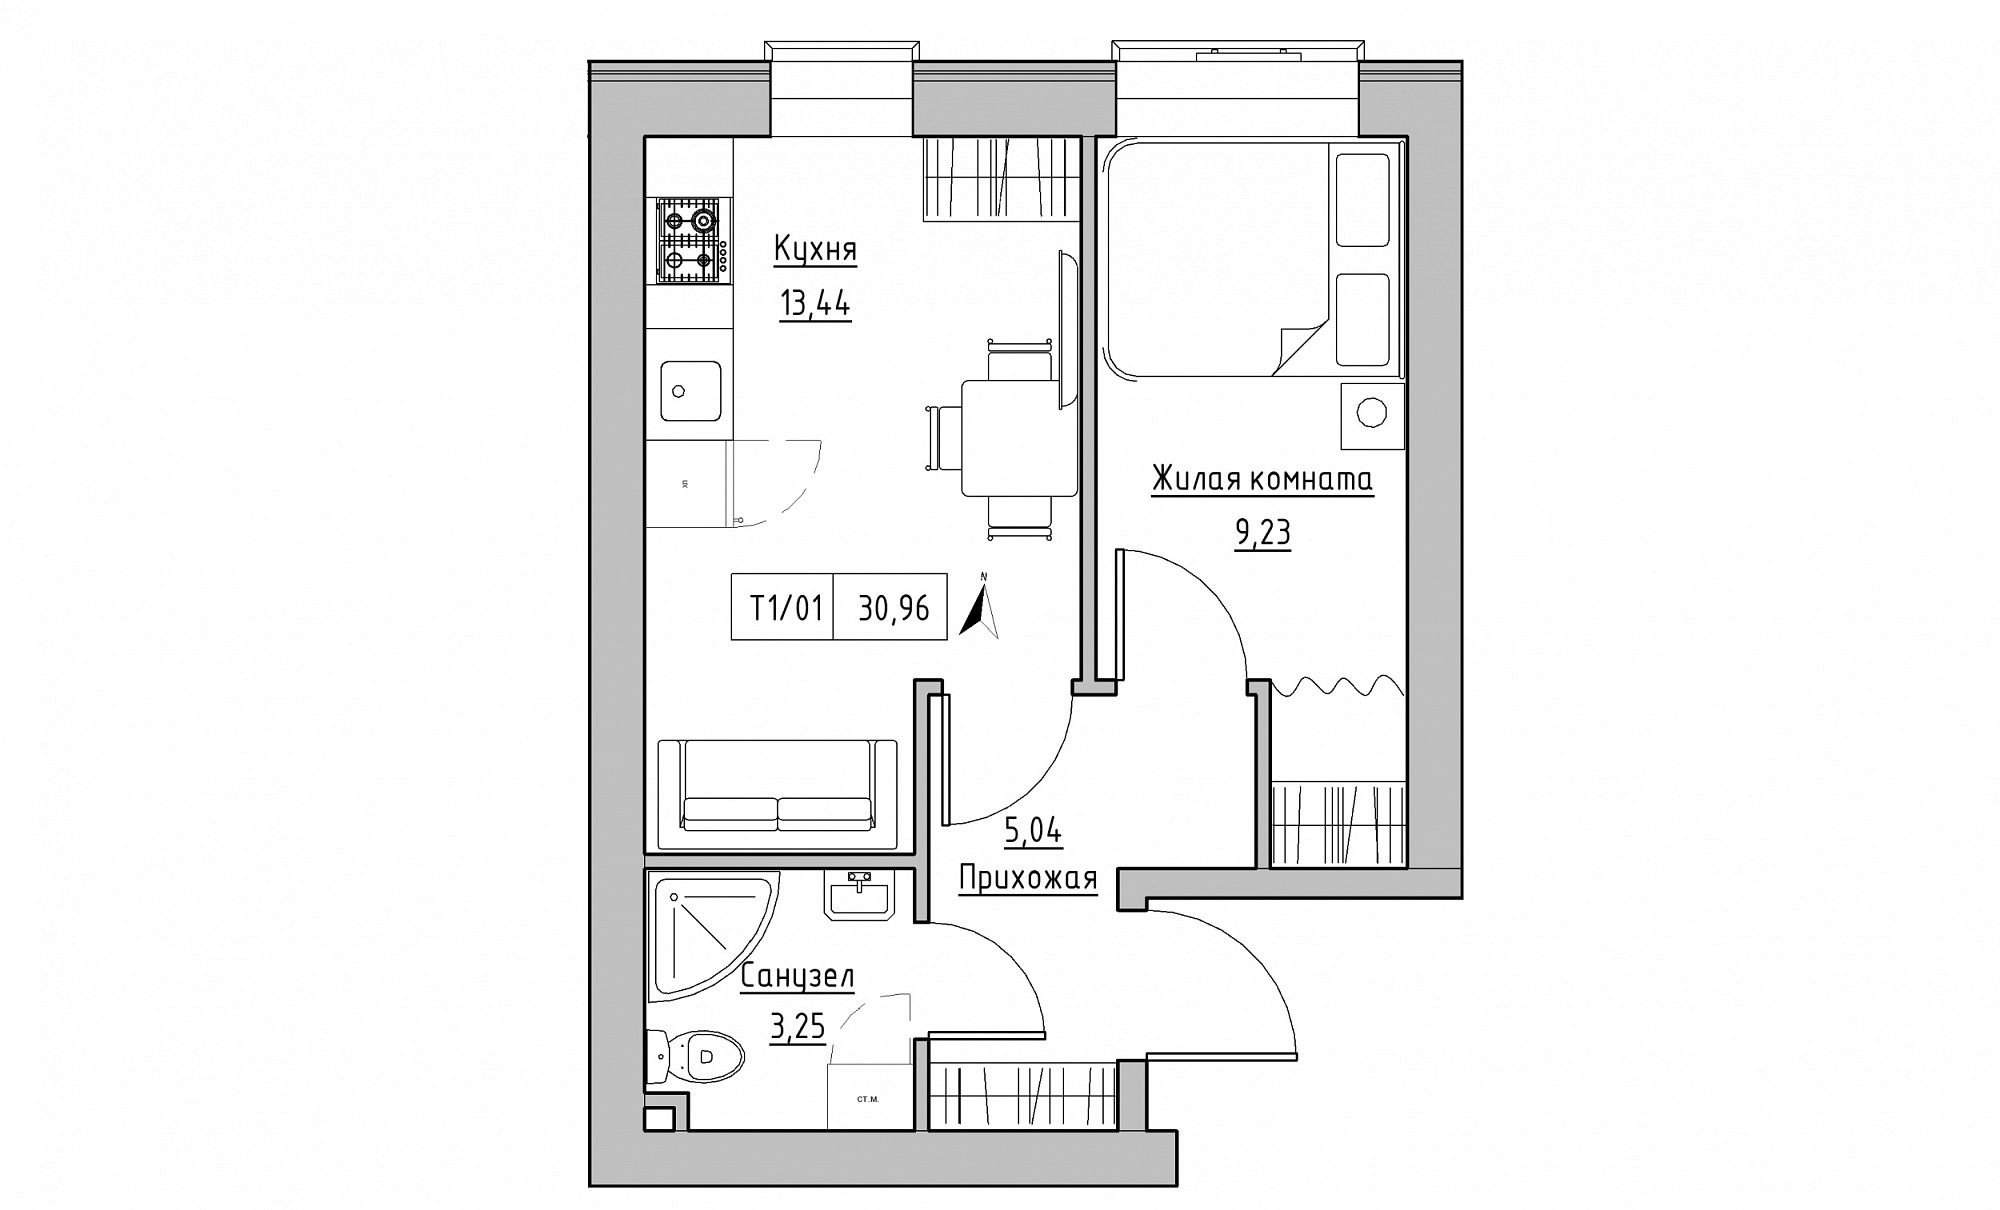 Планування 1-к квартира площею 30.96м2, KS-015-01/0013.